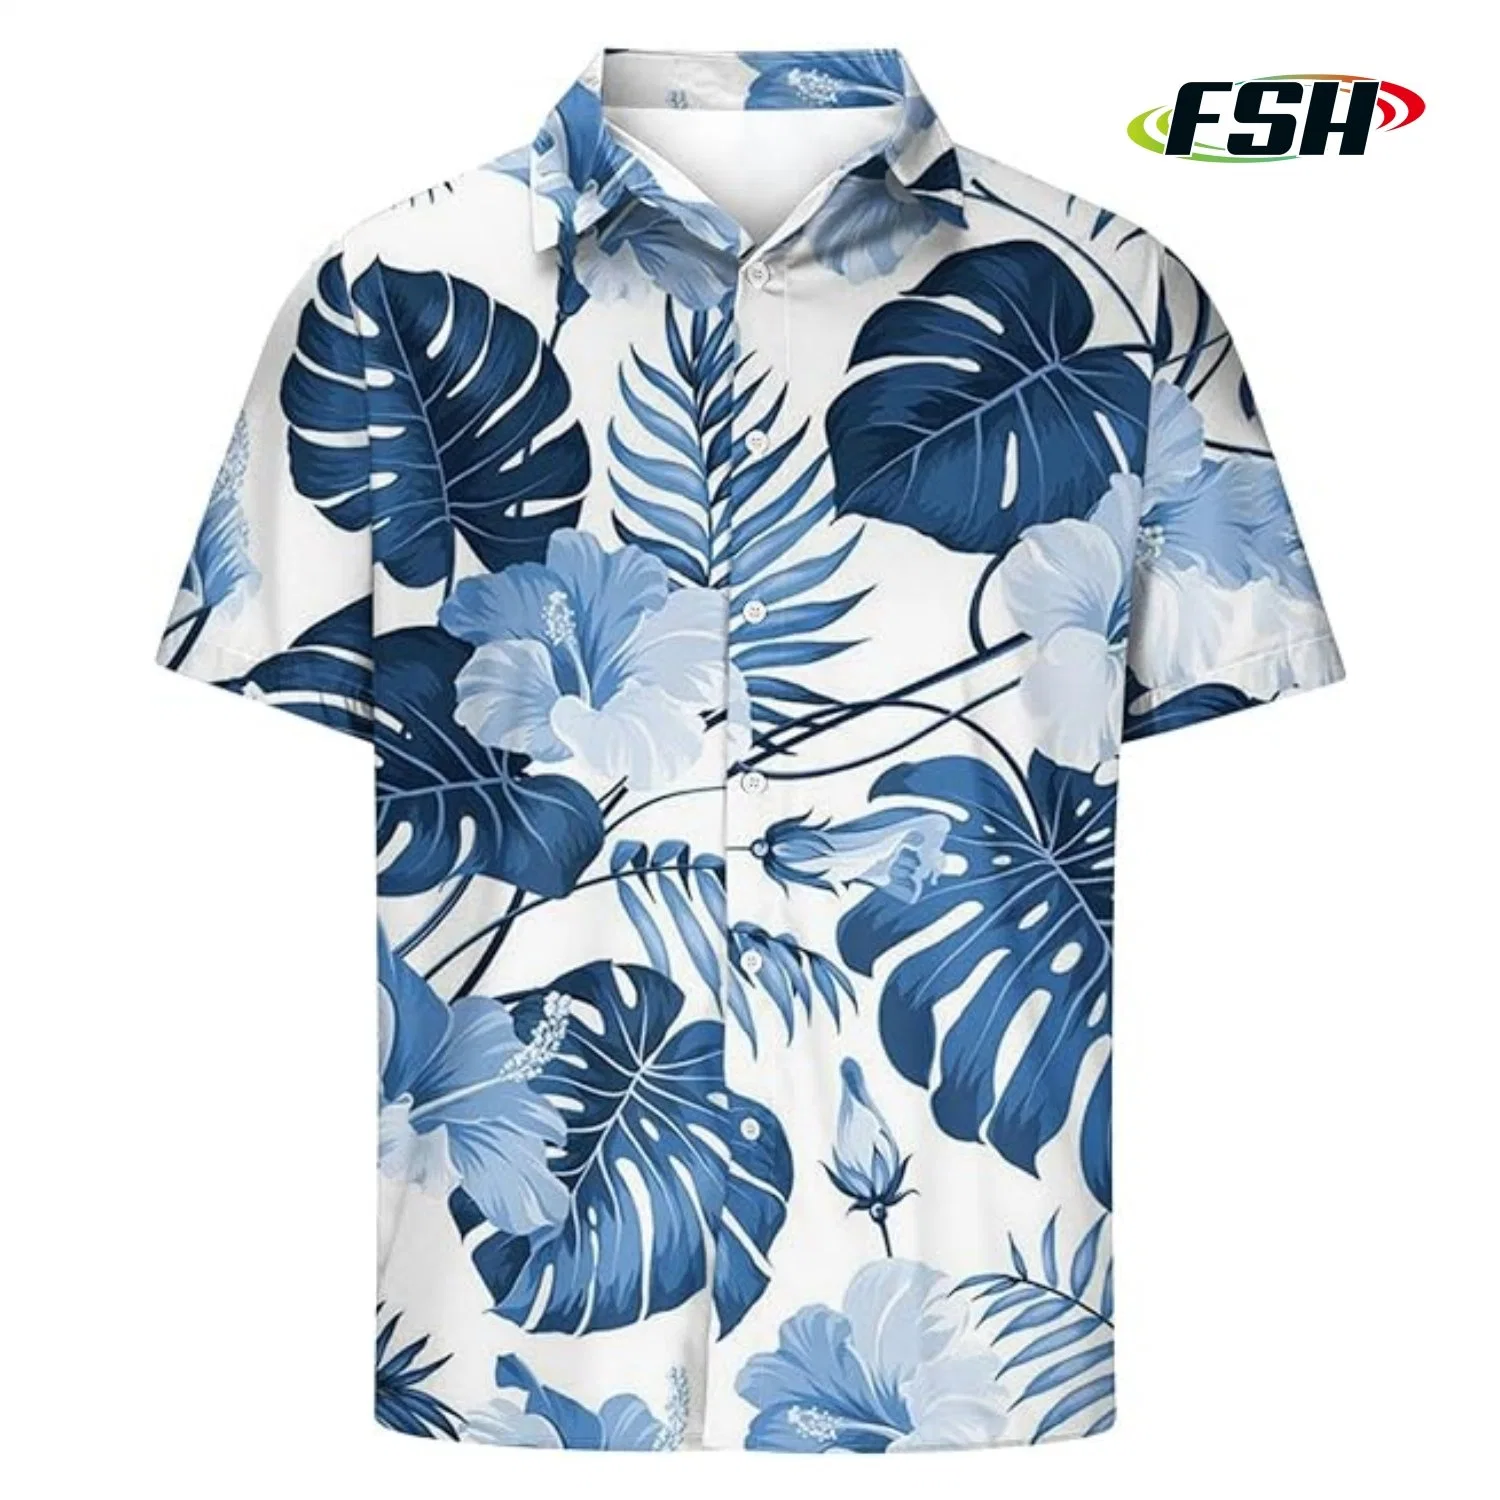 Floral Print Custom Cheap Price Fashion Summer Beach Shirts Vacation Polo